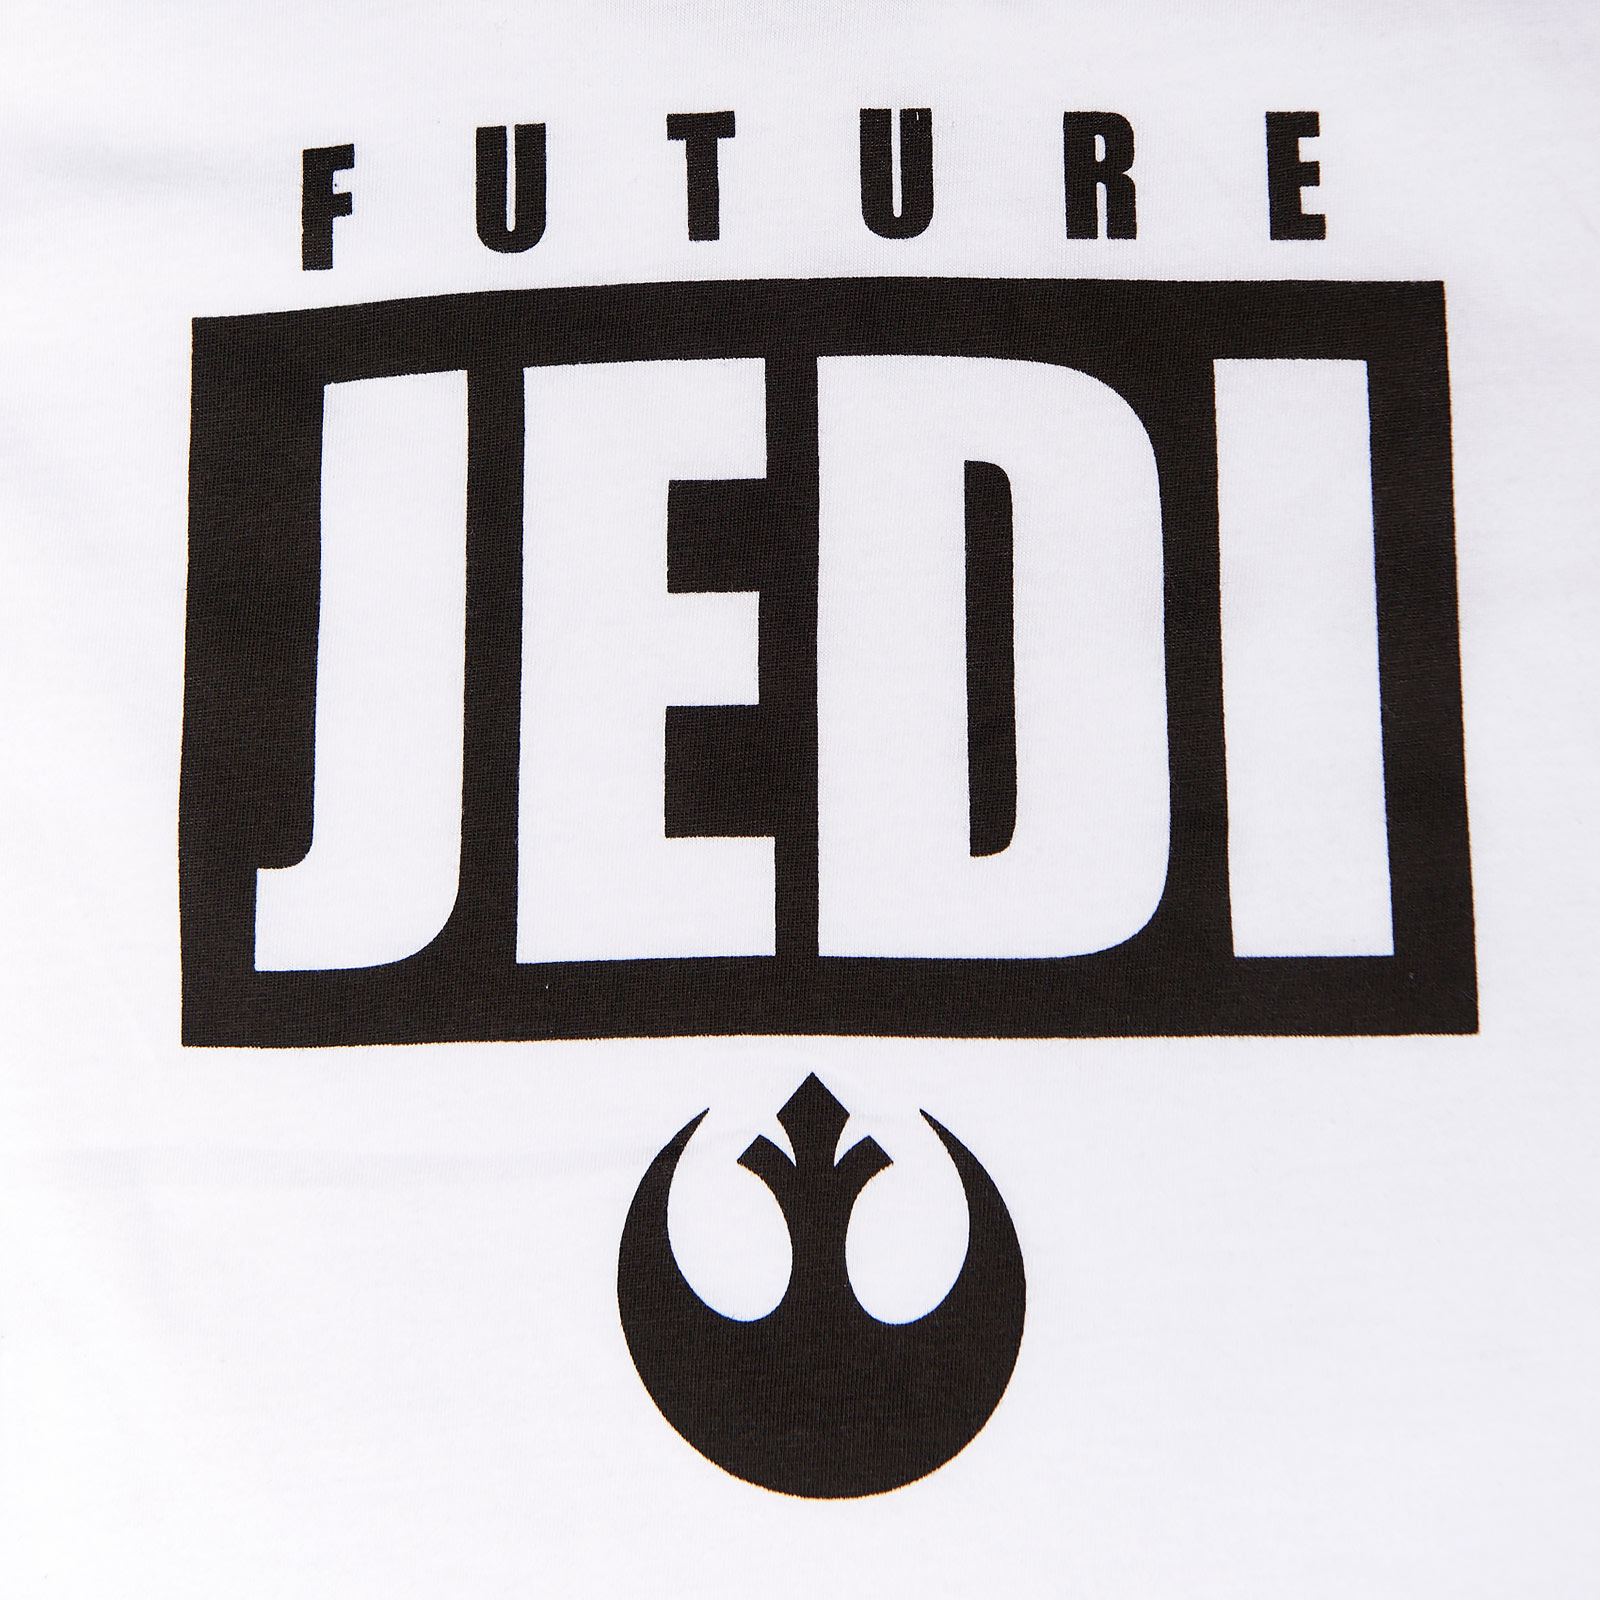 Star Wars - Future Jedi T-Shirt Kinder weiß